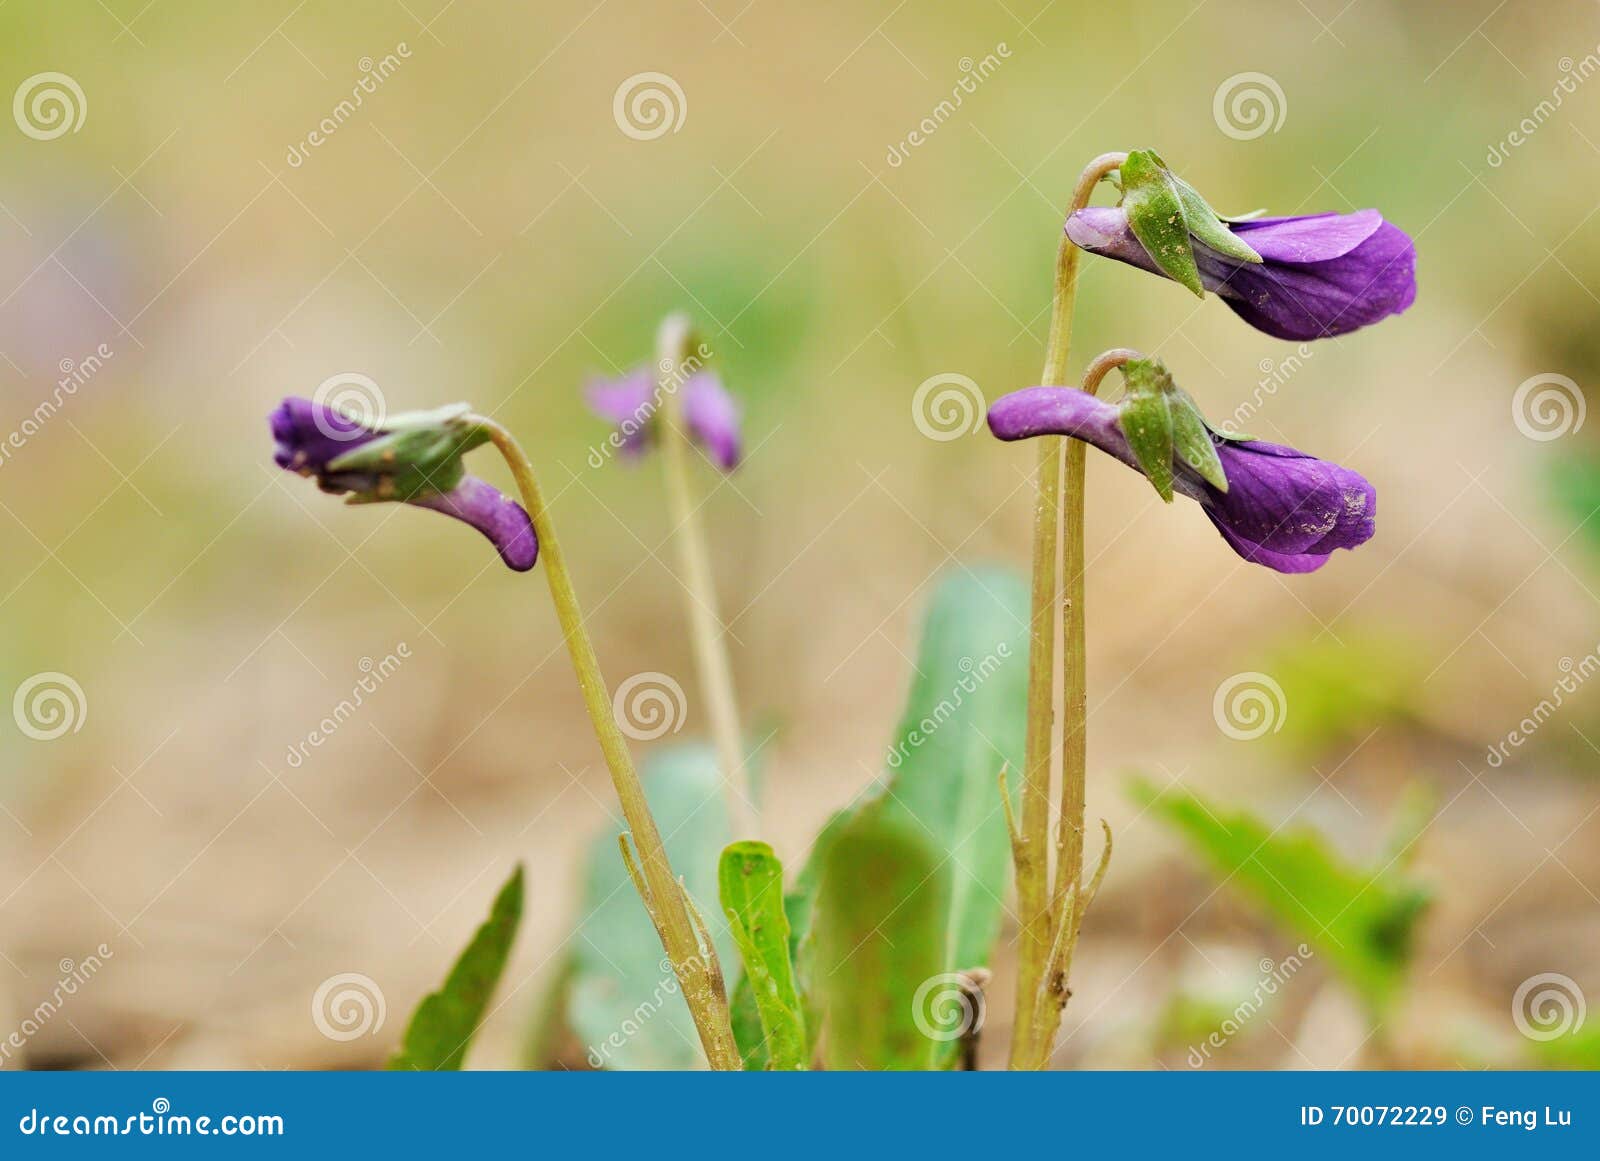 Altówki verecunda, mały kwiat w pączku, właśnie